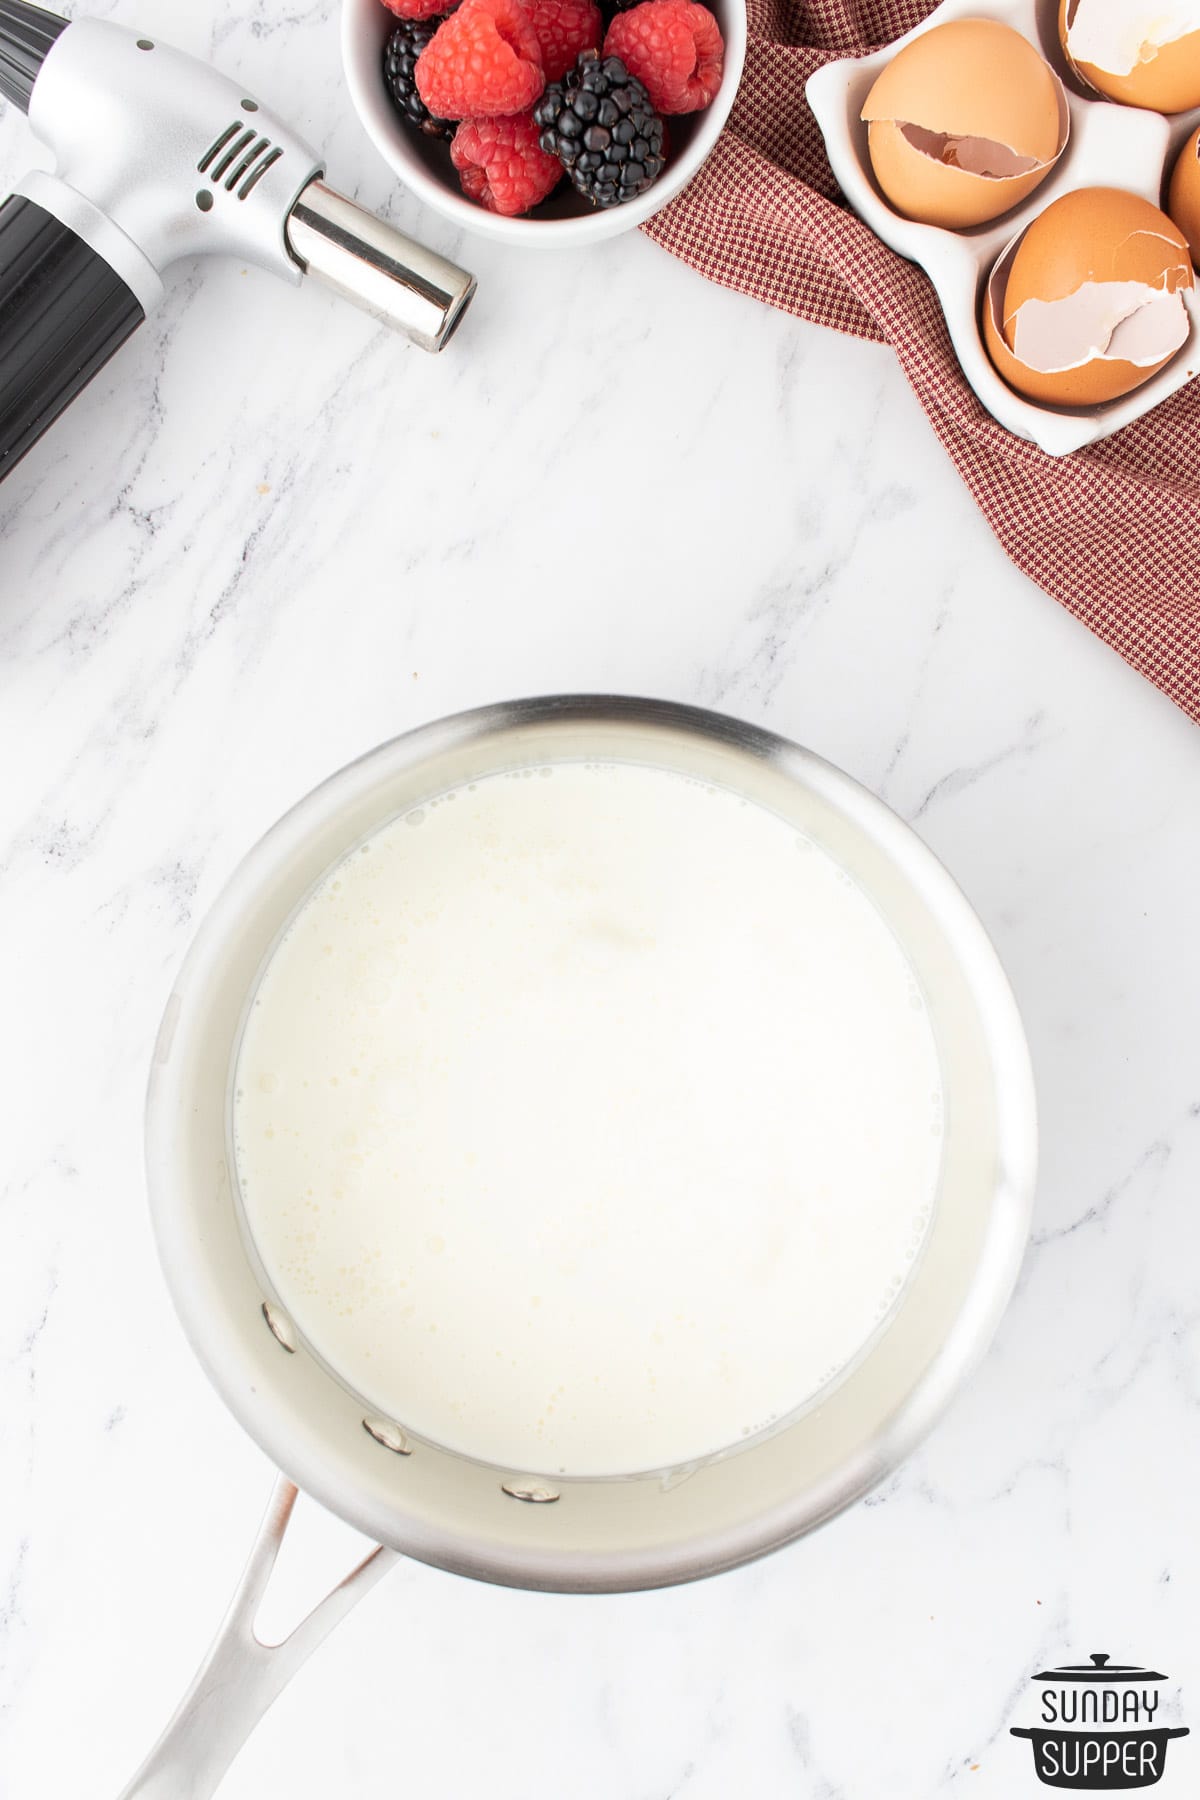 cream scalded in a pot